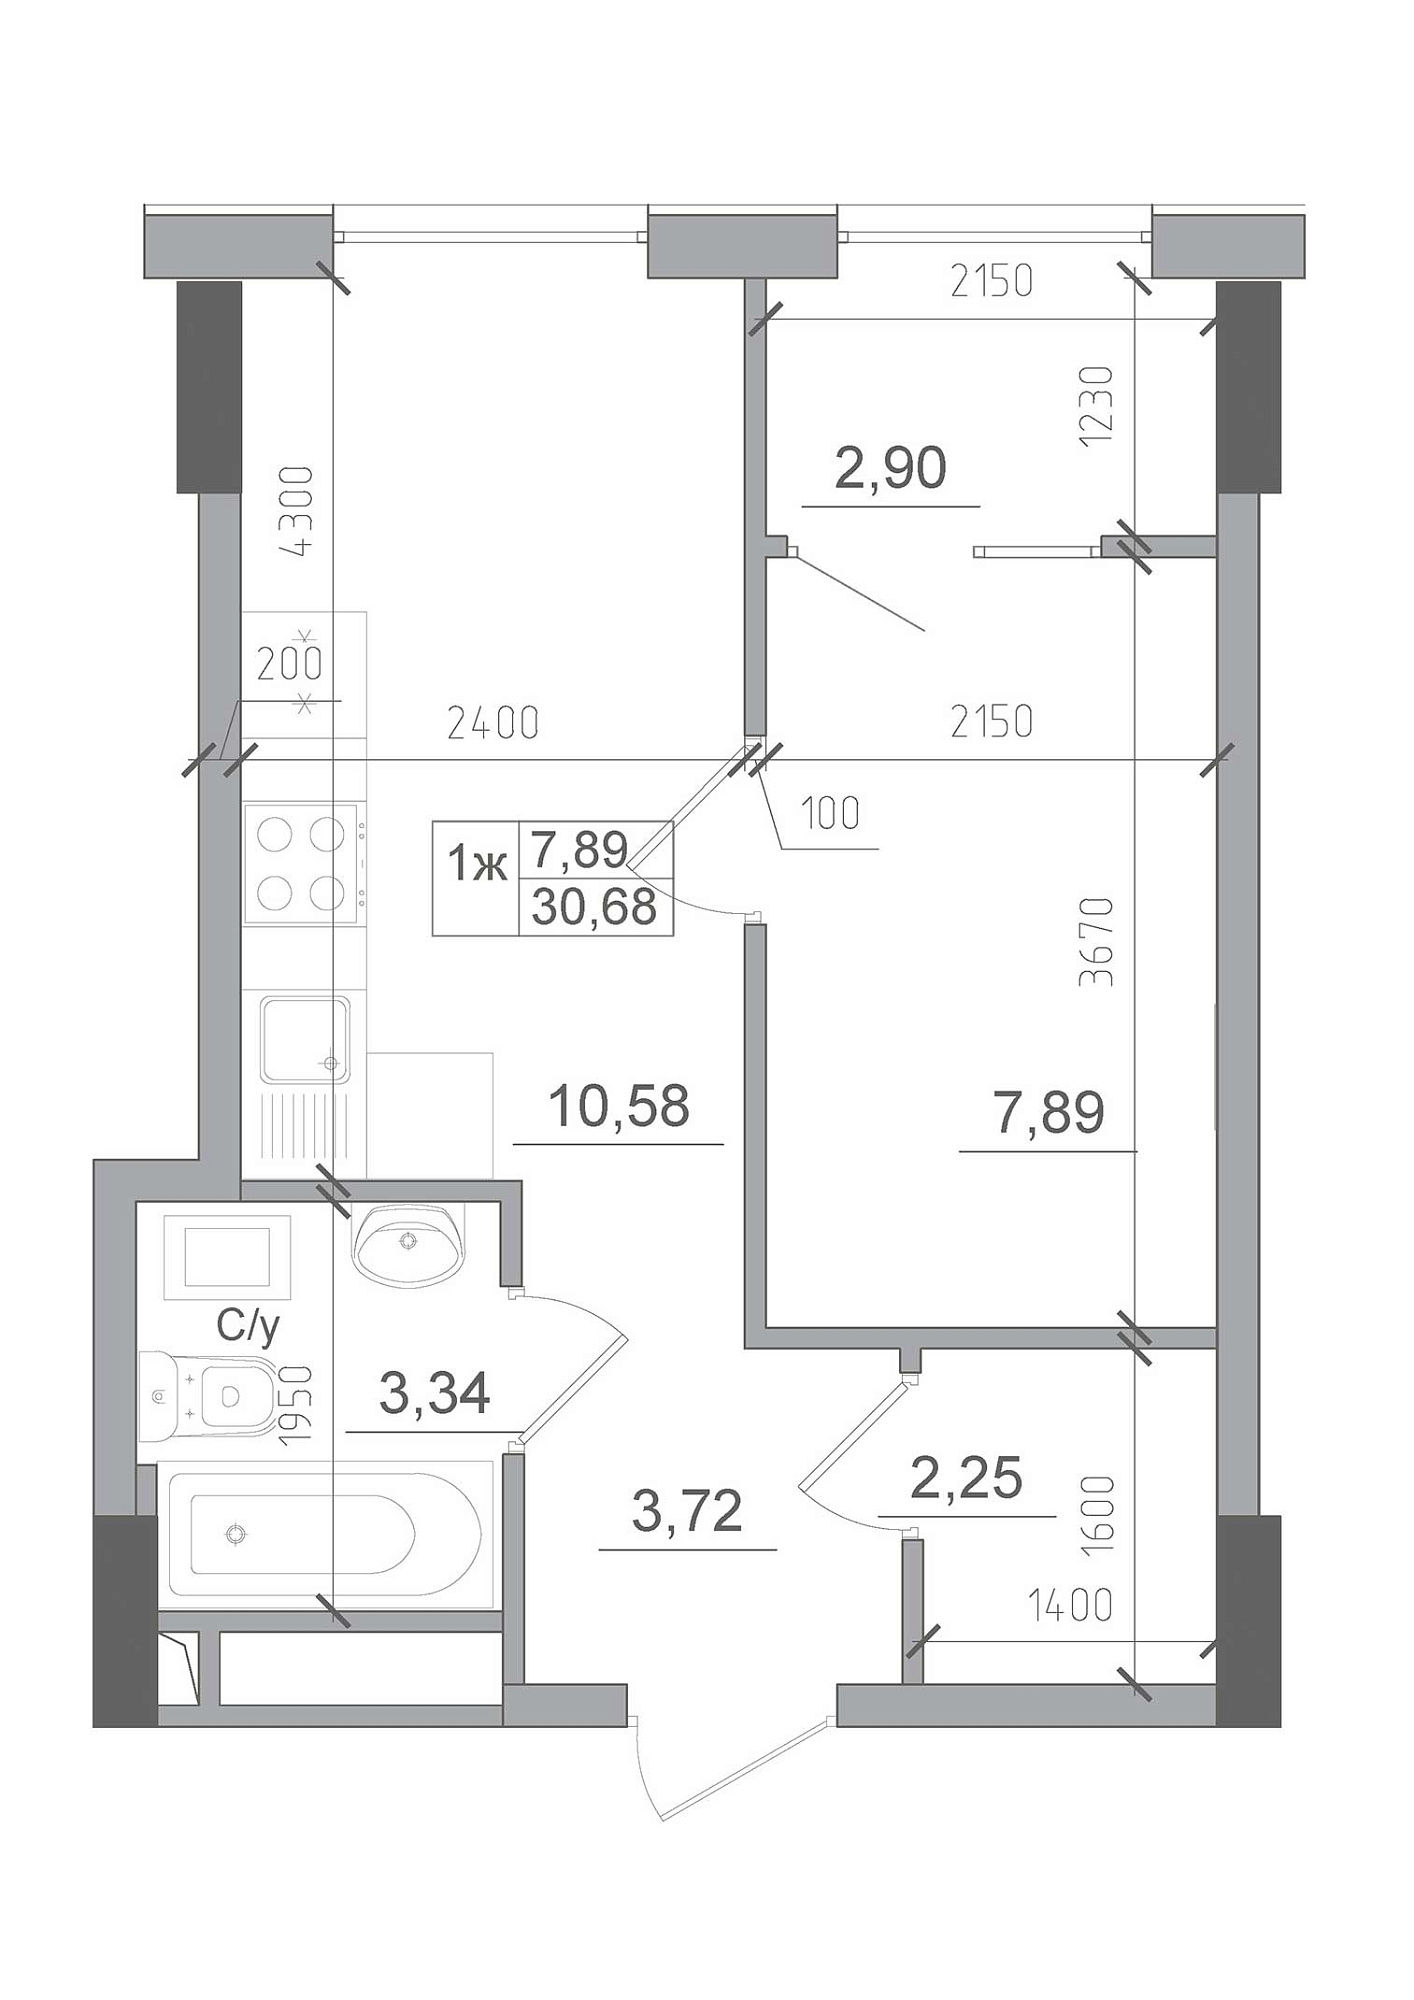 Планировка 1-к квартира площей 30.68м2, AB-22-02/00012.